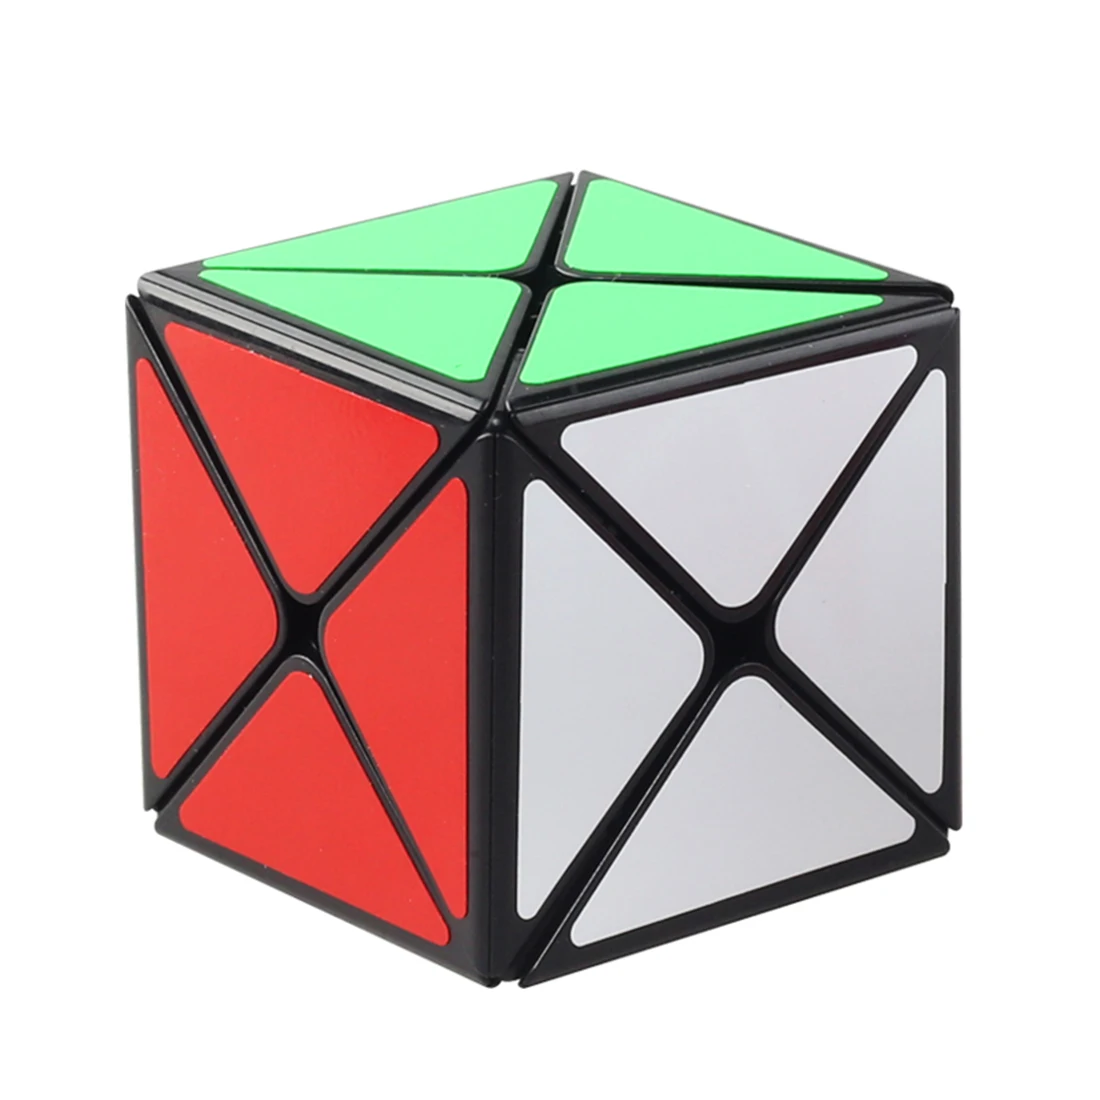 Shengshou Legend 8 Axis Magic Cube Dino Skew Cube 57 мм Twist Puzzles профессиональные Развивающие игрушки для детей игры